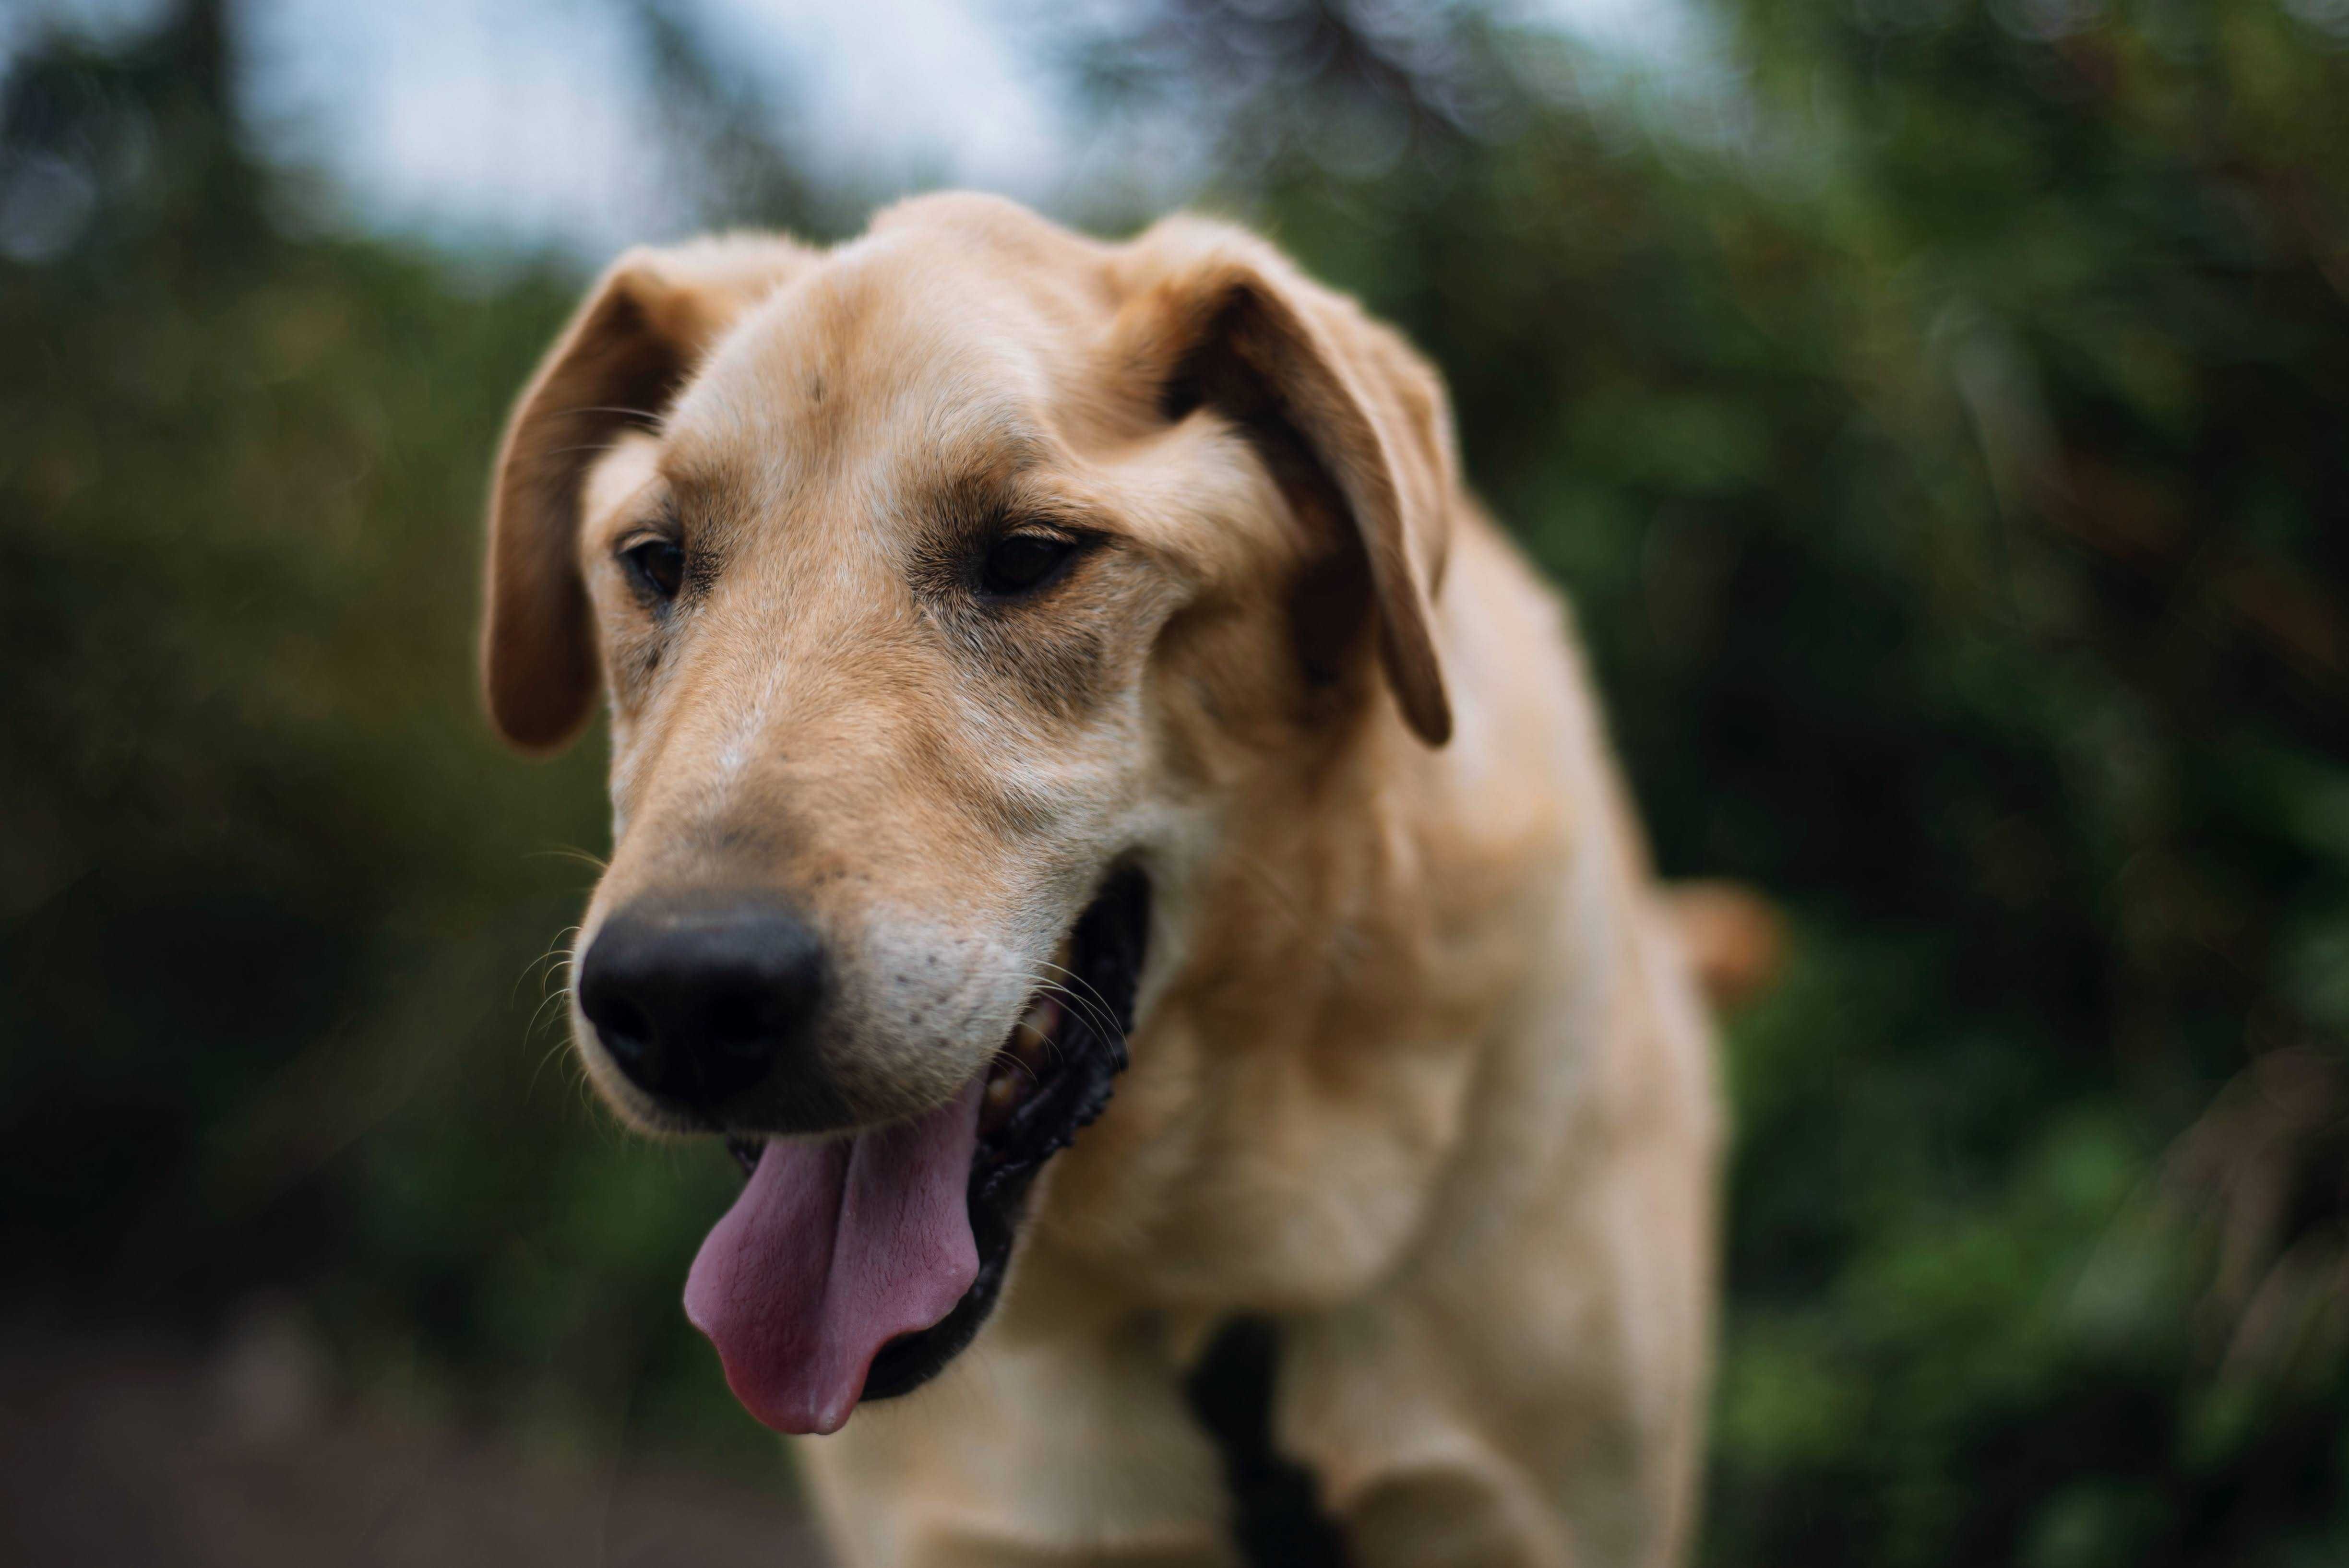 Cudowny psiak w typie Labradora szuka domu